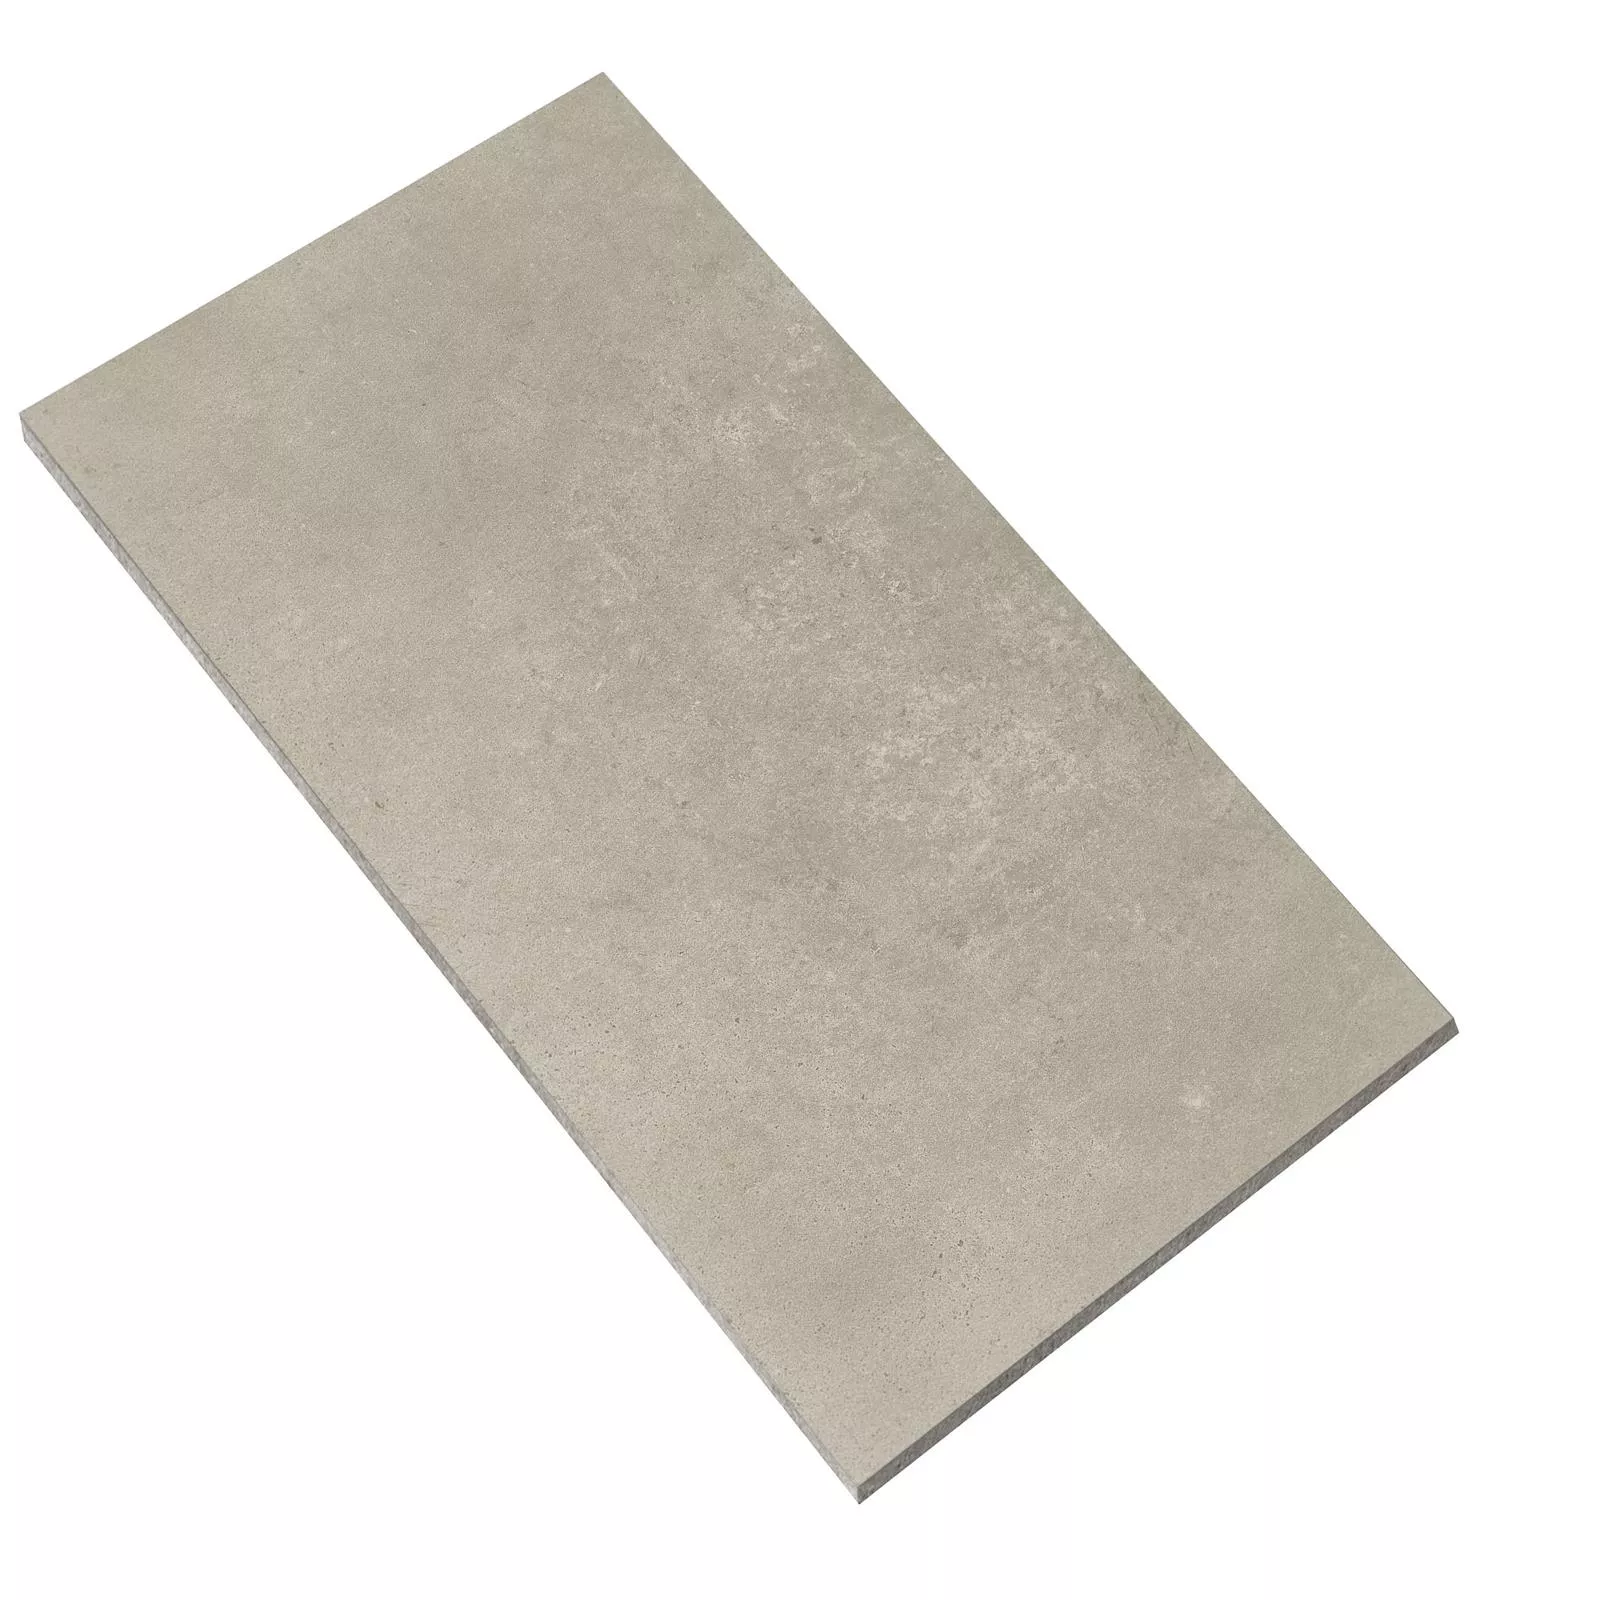 Sample Vloertegels Cement Optic Nepal Slim Beige 30x60cm